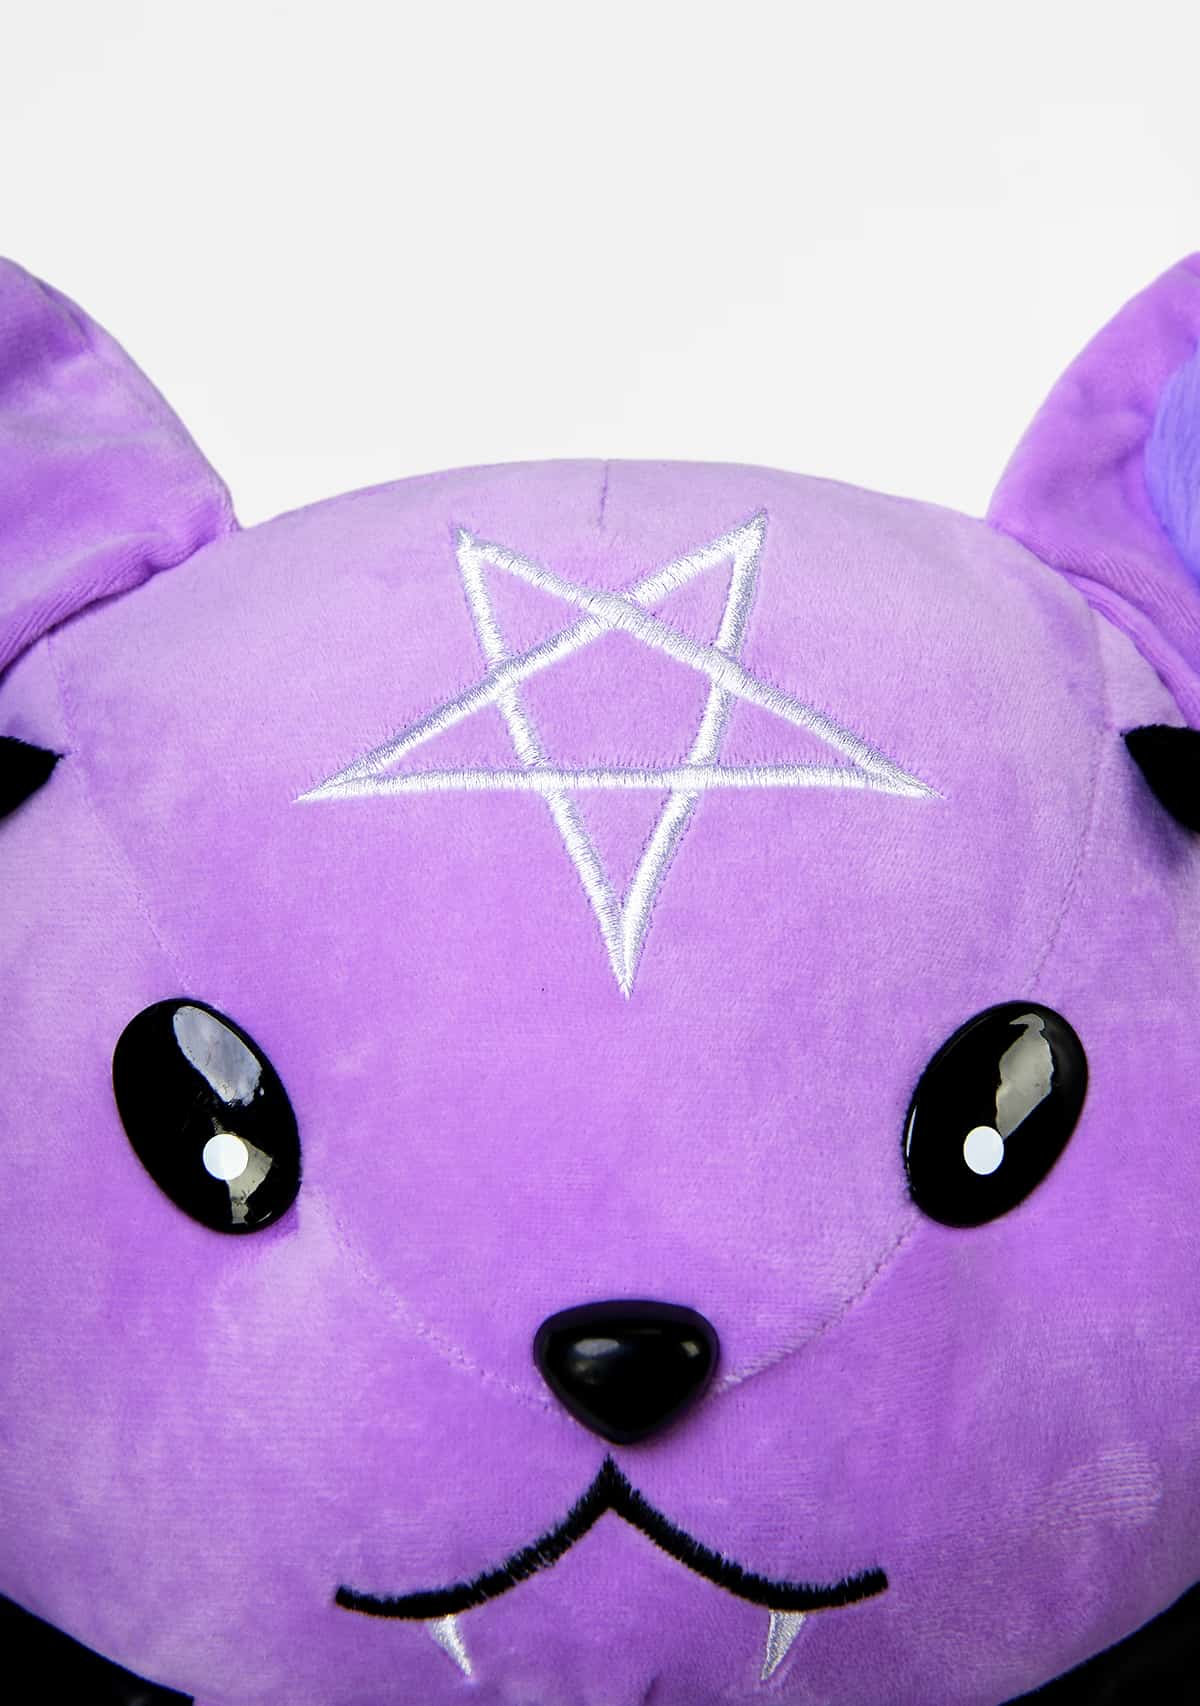 Gothic Emo Cute Bat Plush Toy